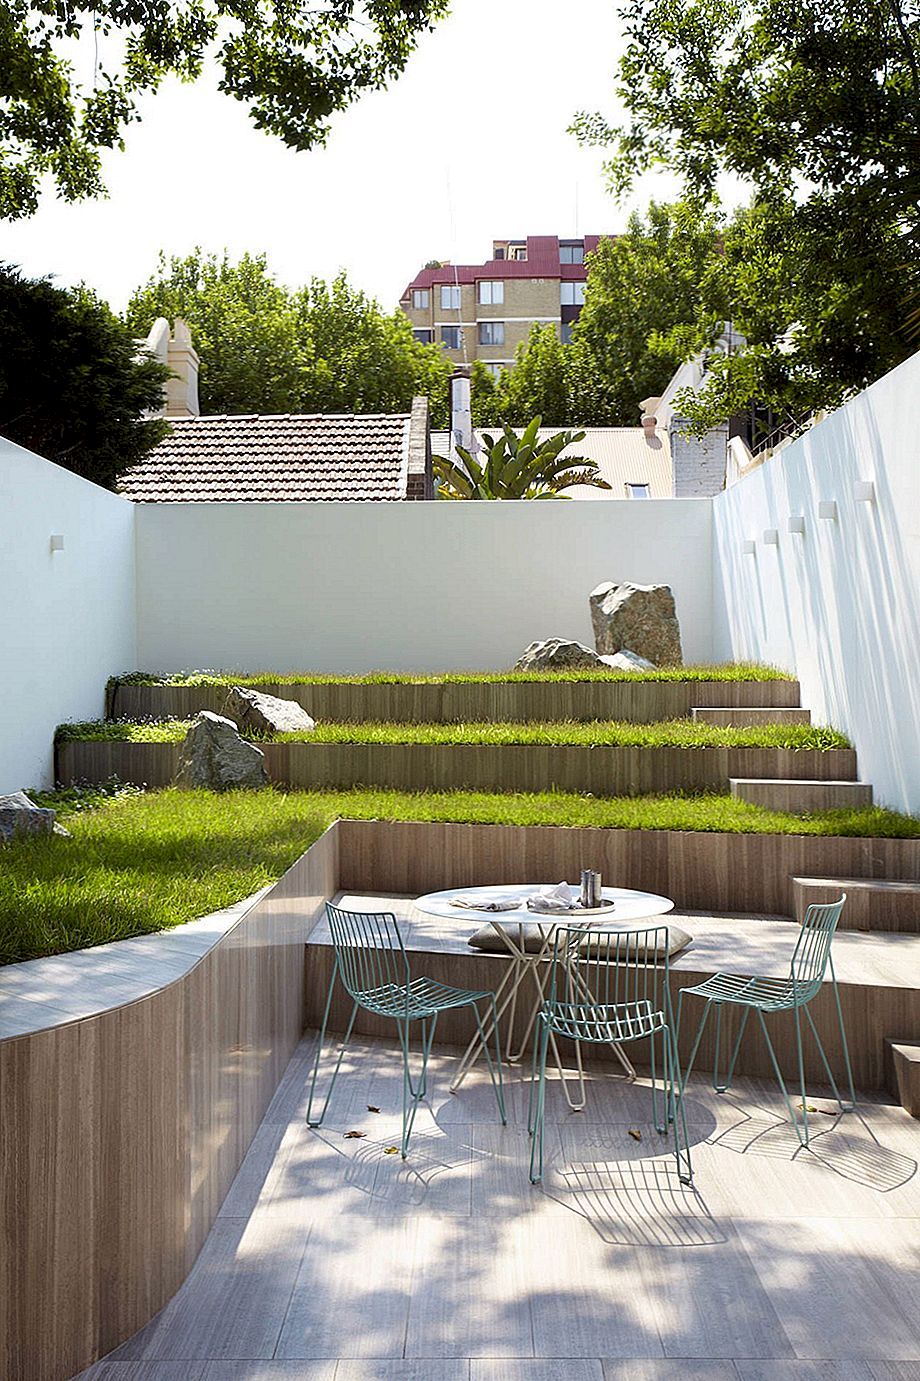 Terraced Gardens - Làm thế nào để đưa vẻ đẹp đến cấp độ tiếp theo